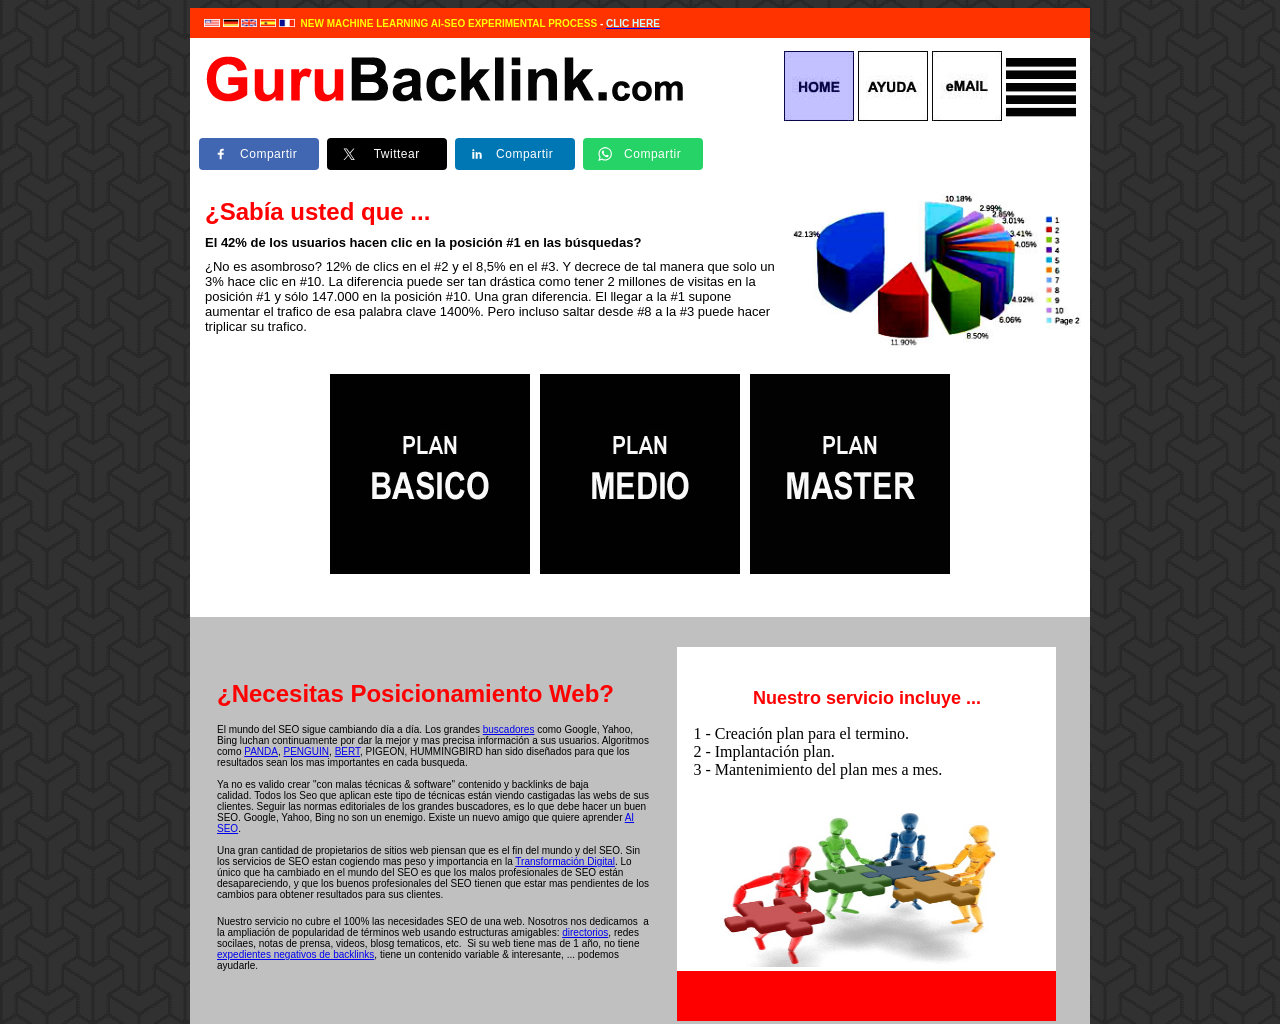 gurubacklink.com